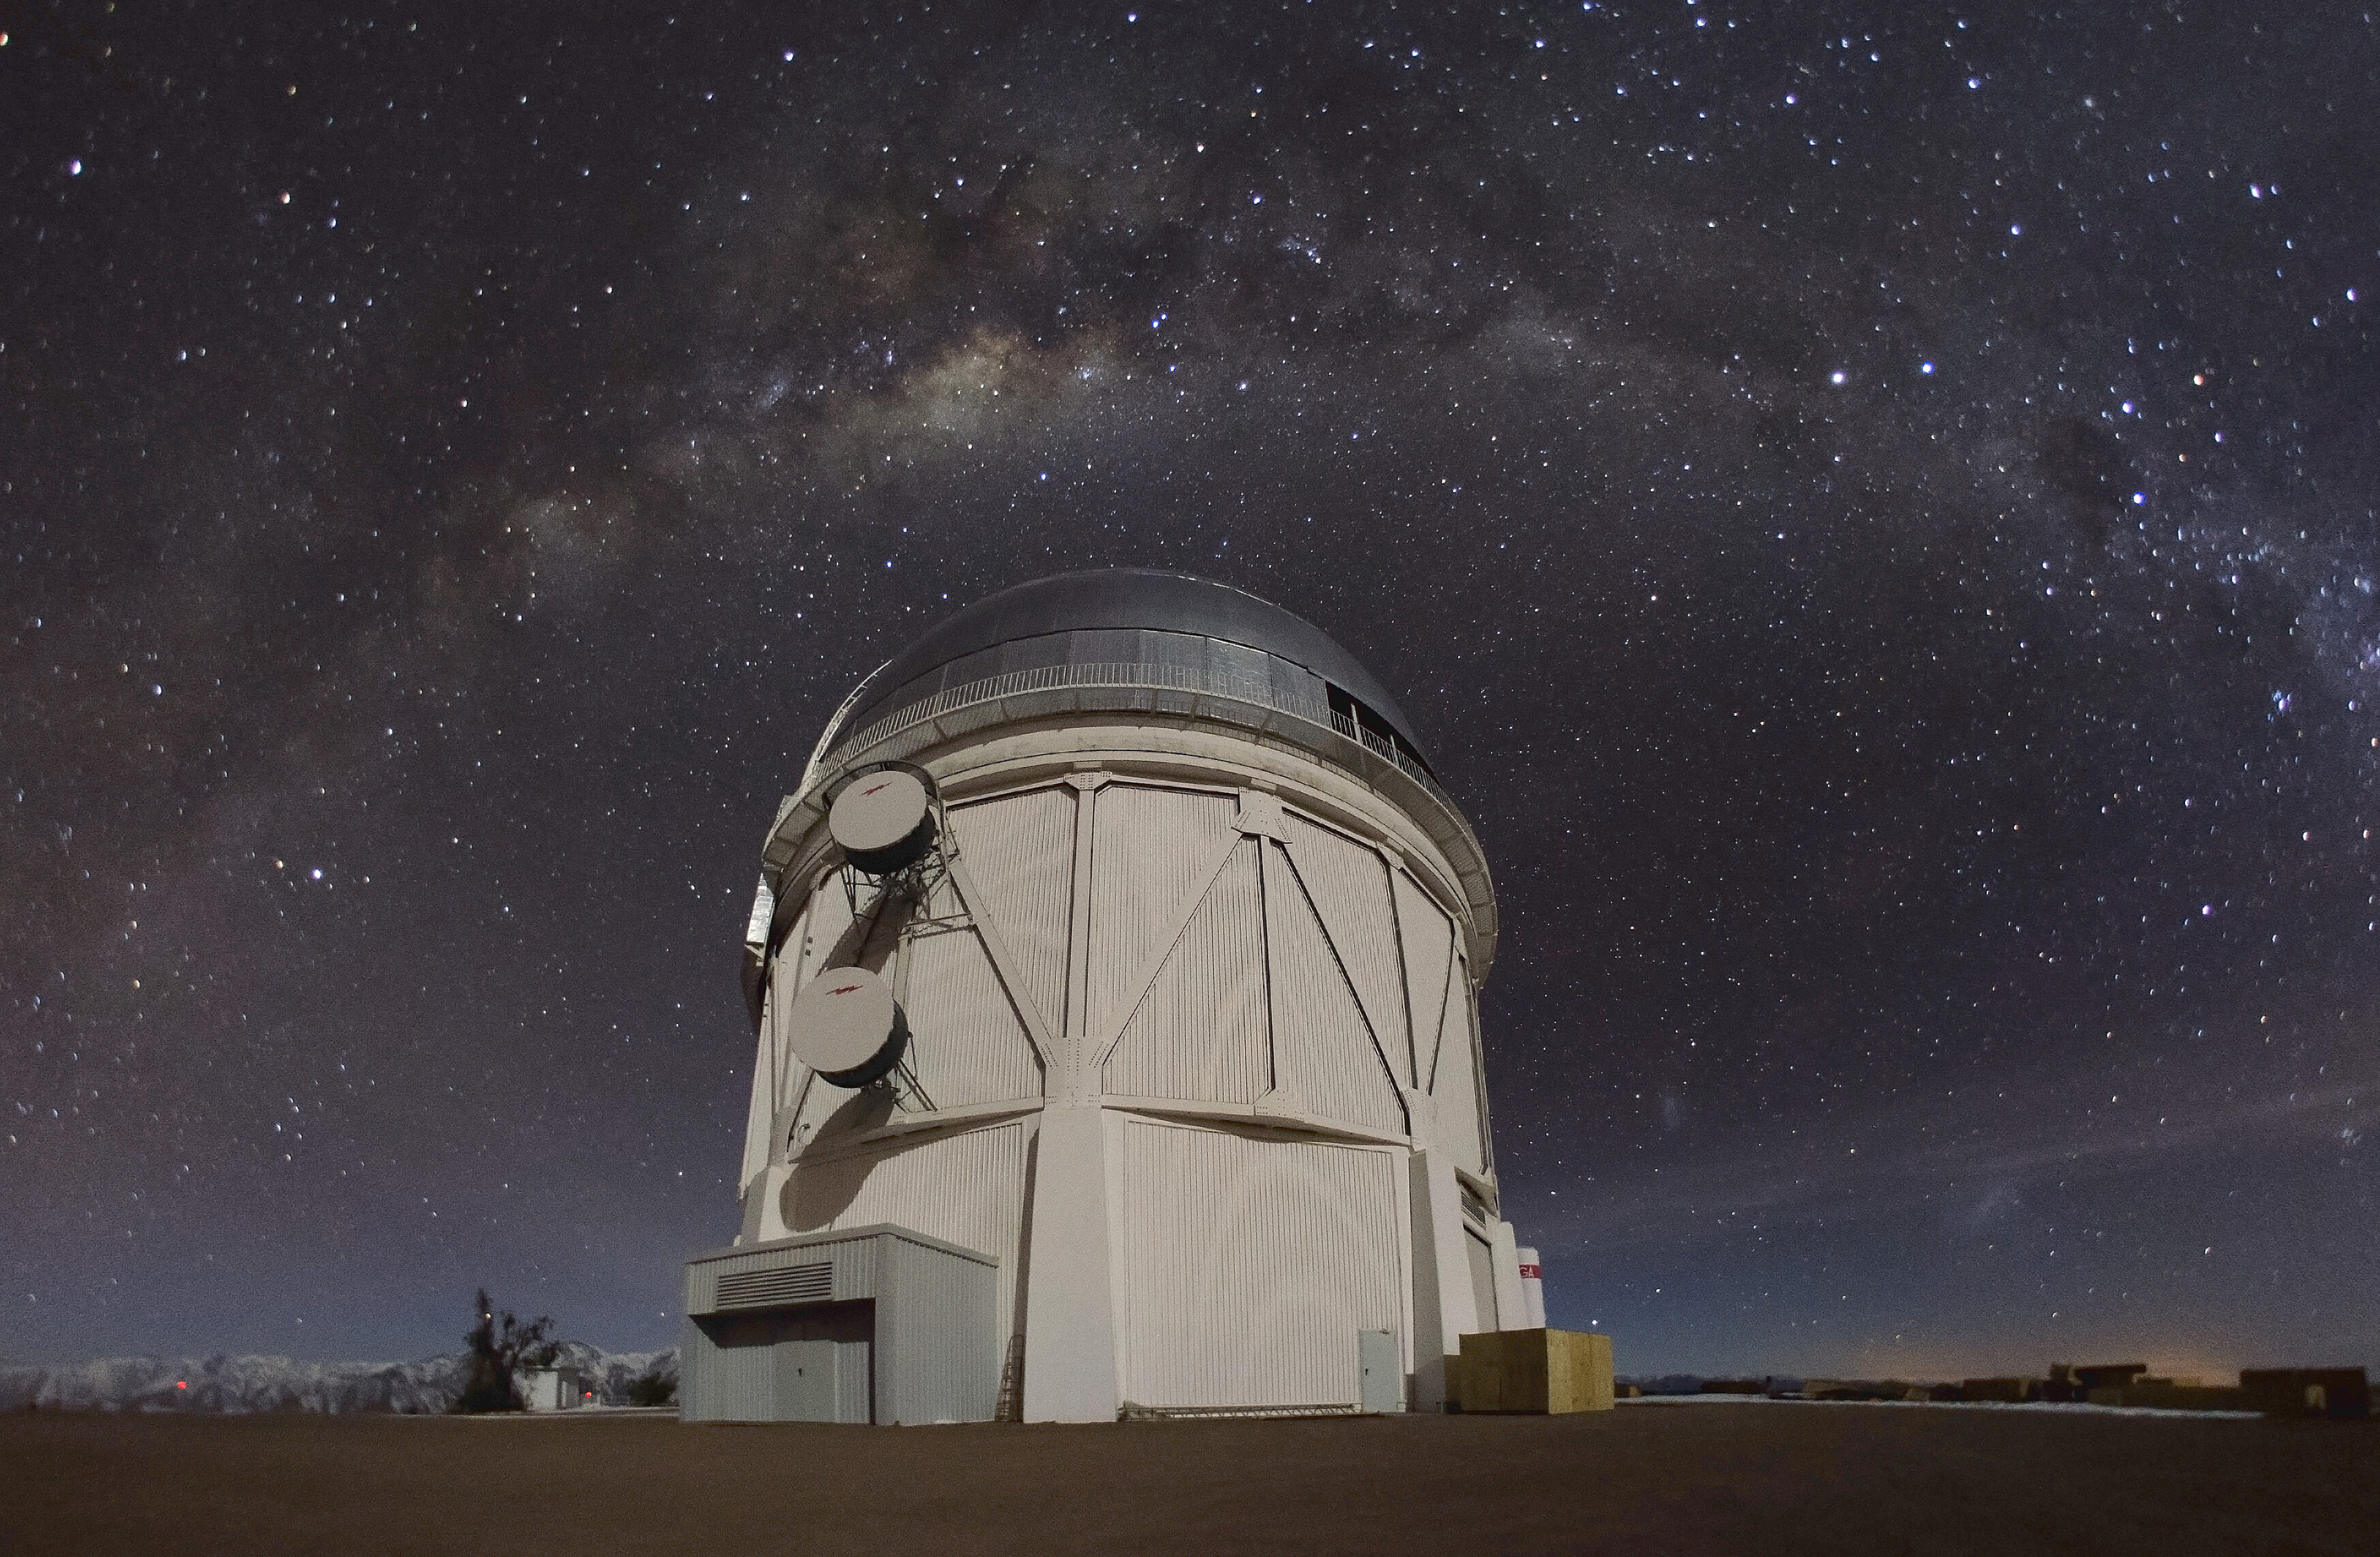 Una foto sin fecha facilitada por el Observatorio Interamericano de Cerro Tololo, en Chile, muestra la cúpula del telescopio Víctor M. Blanco de 4 metros, donde una cámara de energía oscura detecta asteroides que orbitan entre la Tierra y el Sol. (Foto Prensa Libre: D. Munizaga / The New York Times)